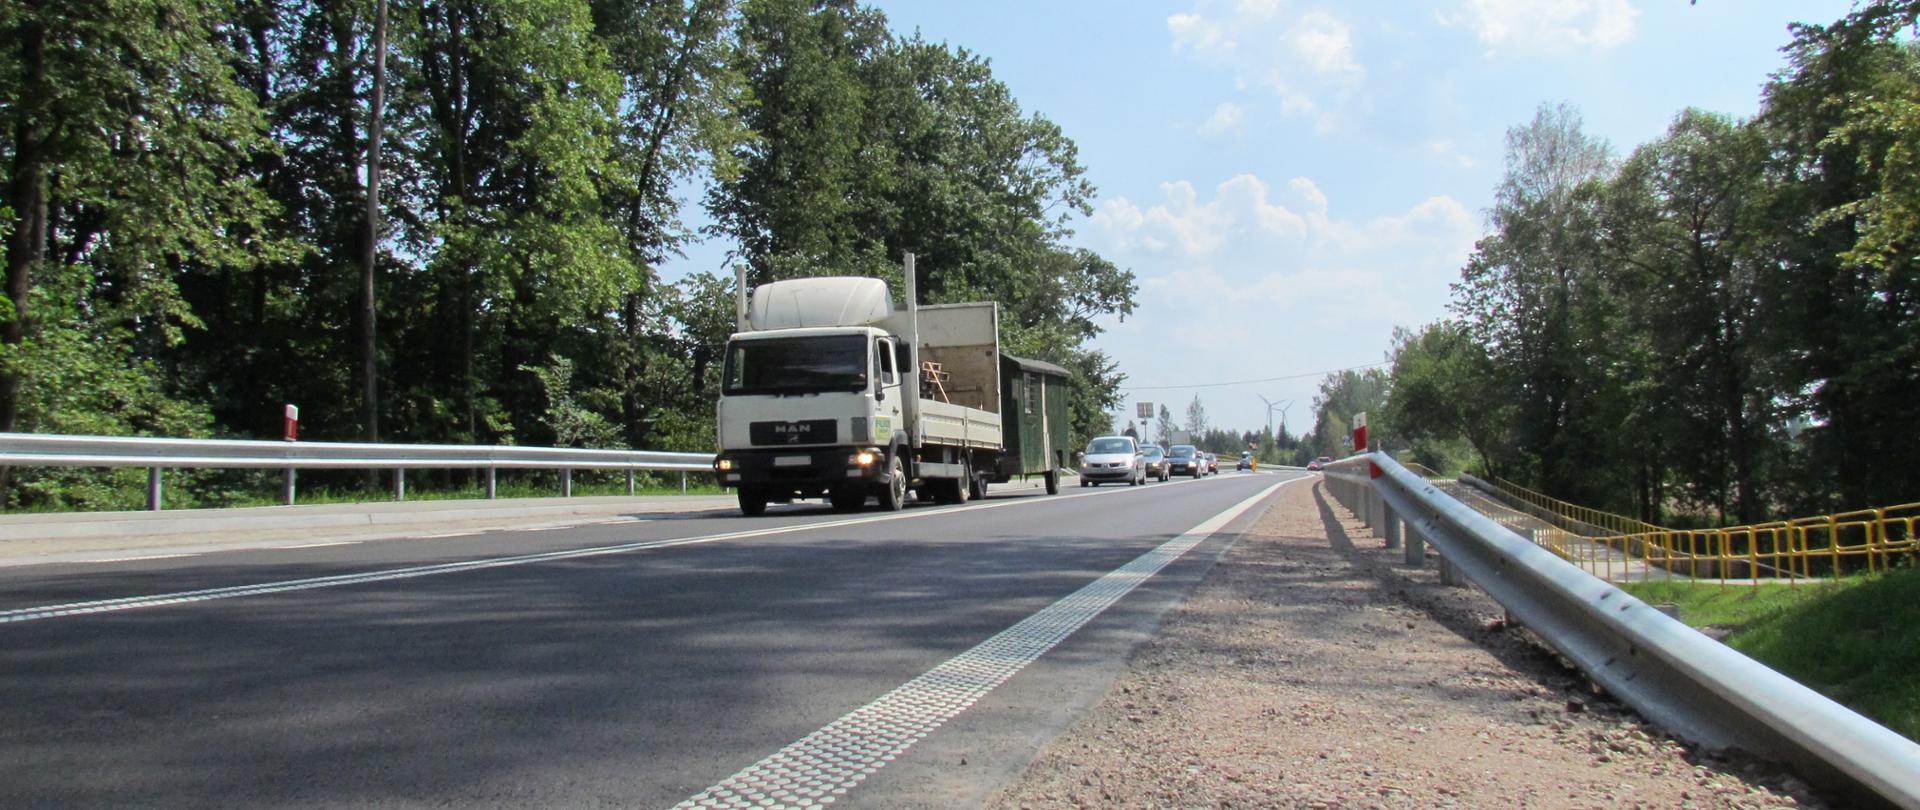 Asfaltowa droga, po obu stronach znajdują się bariery, za barierami drzewa. na drodze pojazdy osobowe i jeden ciężarowy.